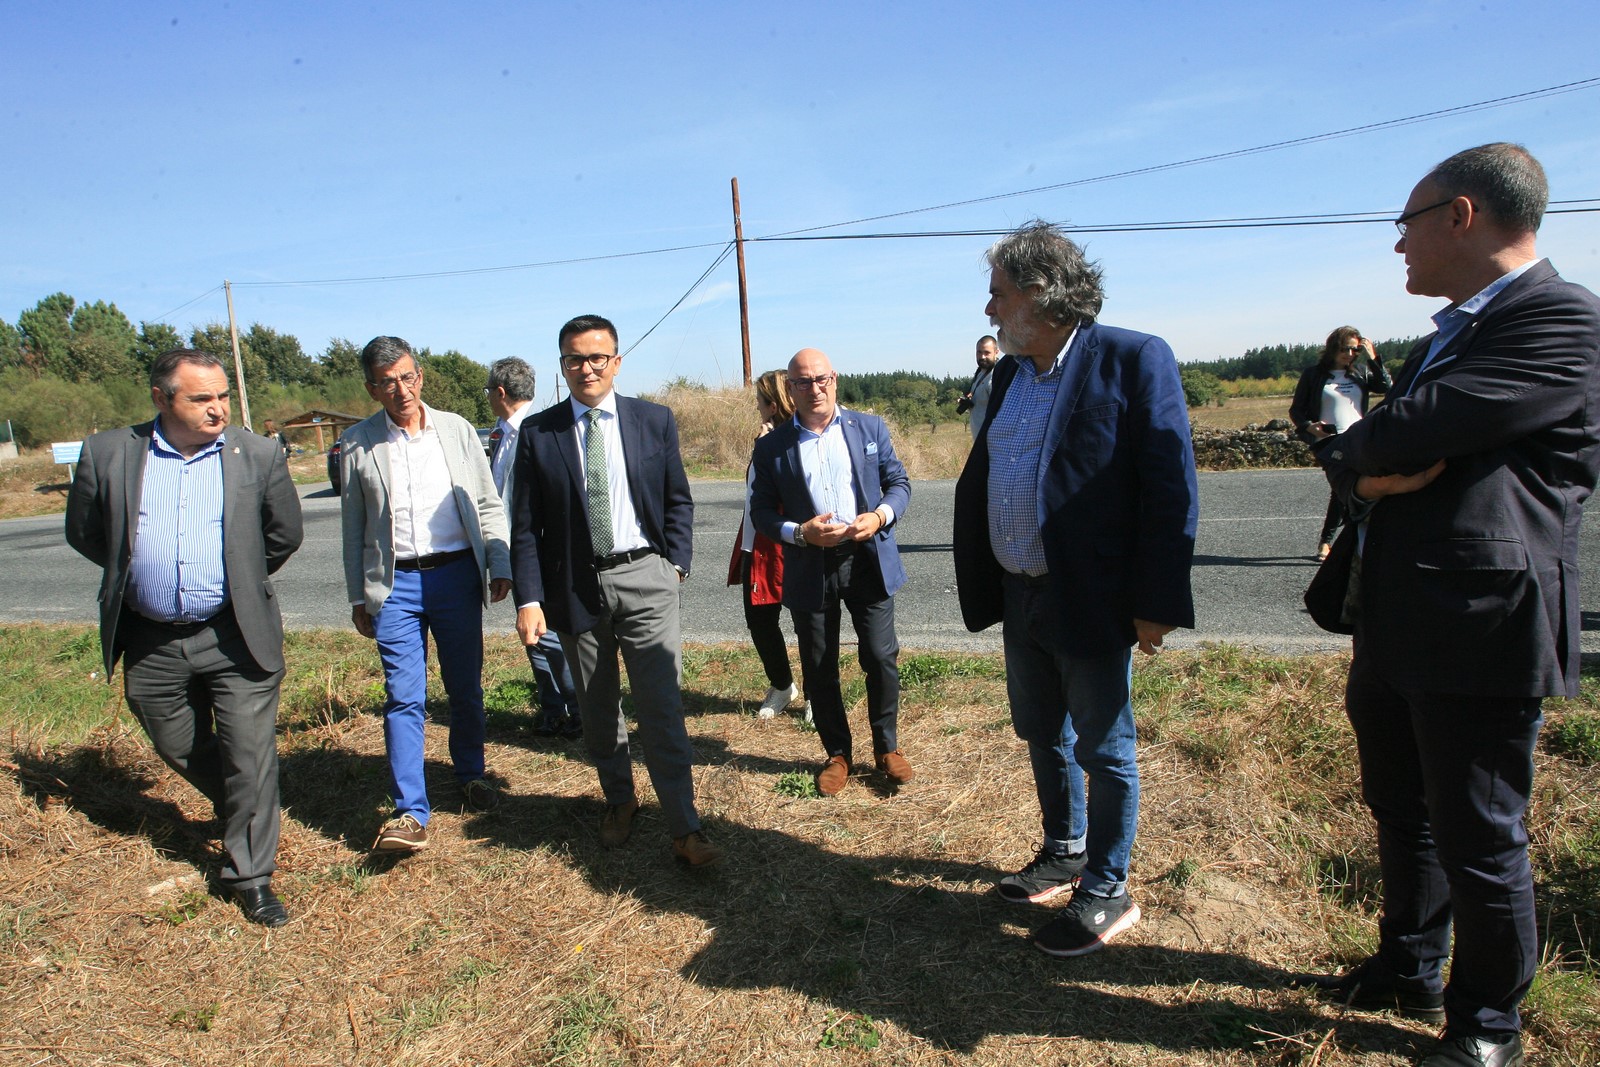 El conselleiro de Medio Rural, José González, destacó hoy la importancia de los proyectos de movilización de tierras agrarias impulsados por la Xunta en diferentes puntos de Galicia